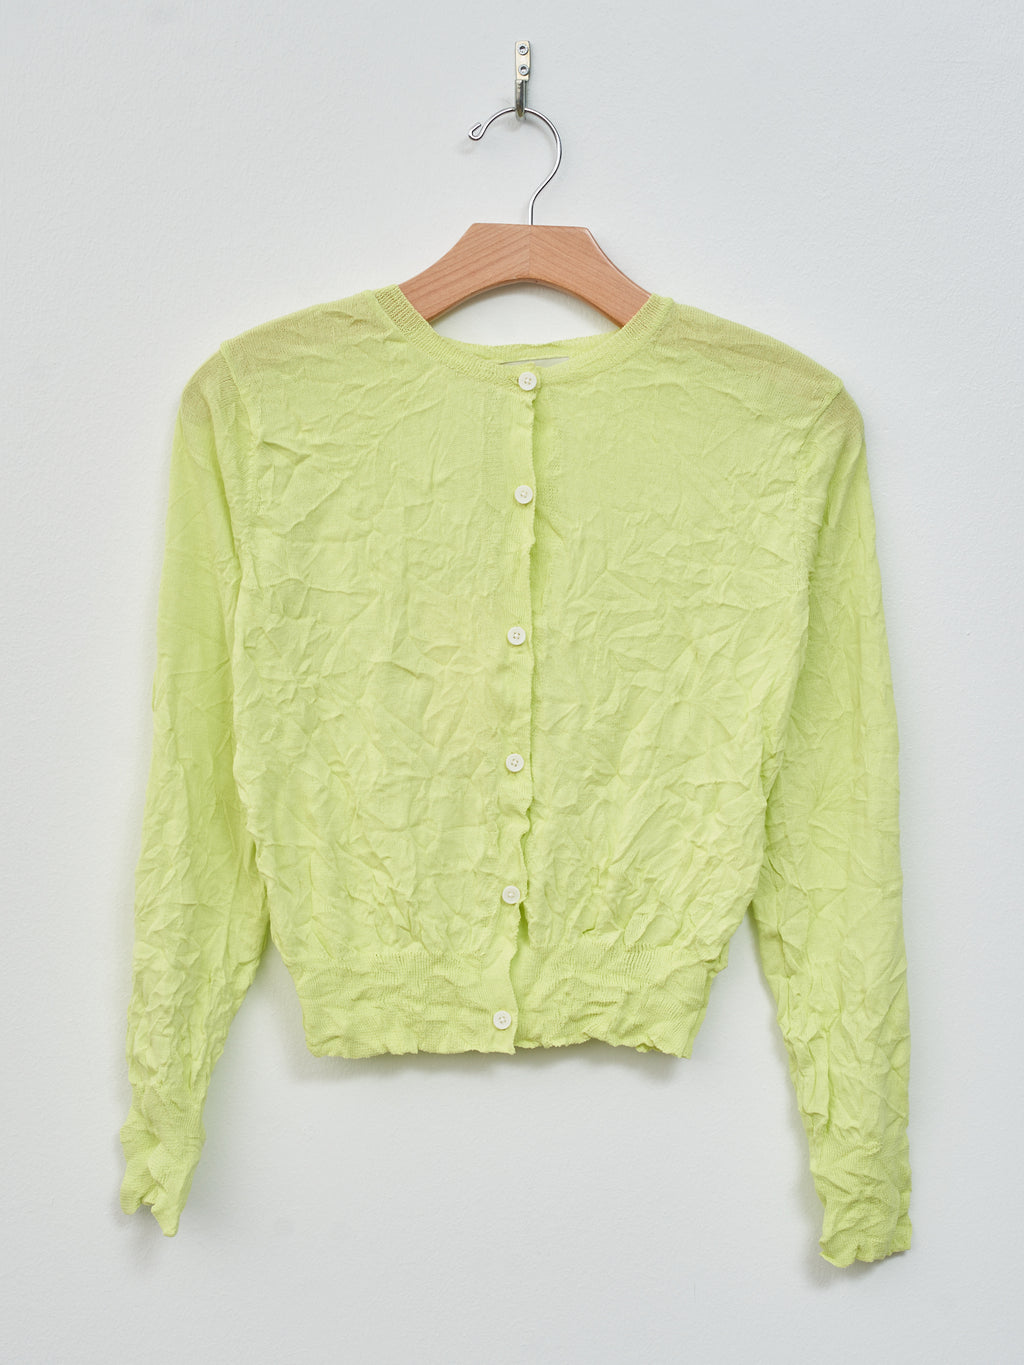 Namu Shop - Sayaka Davis Crinkled Knit Cardigan - Acid Lime